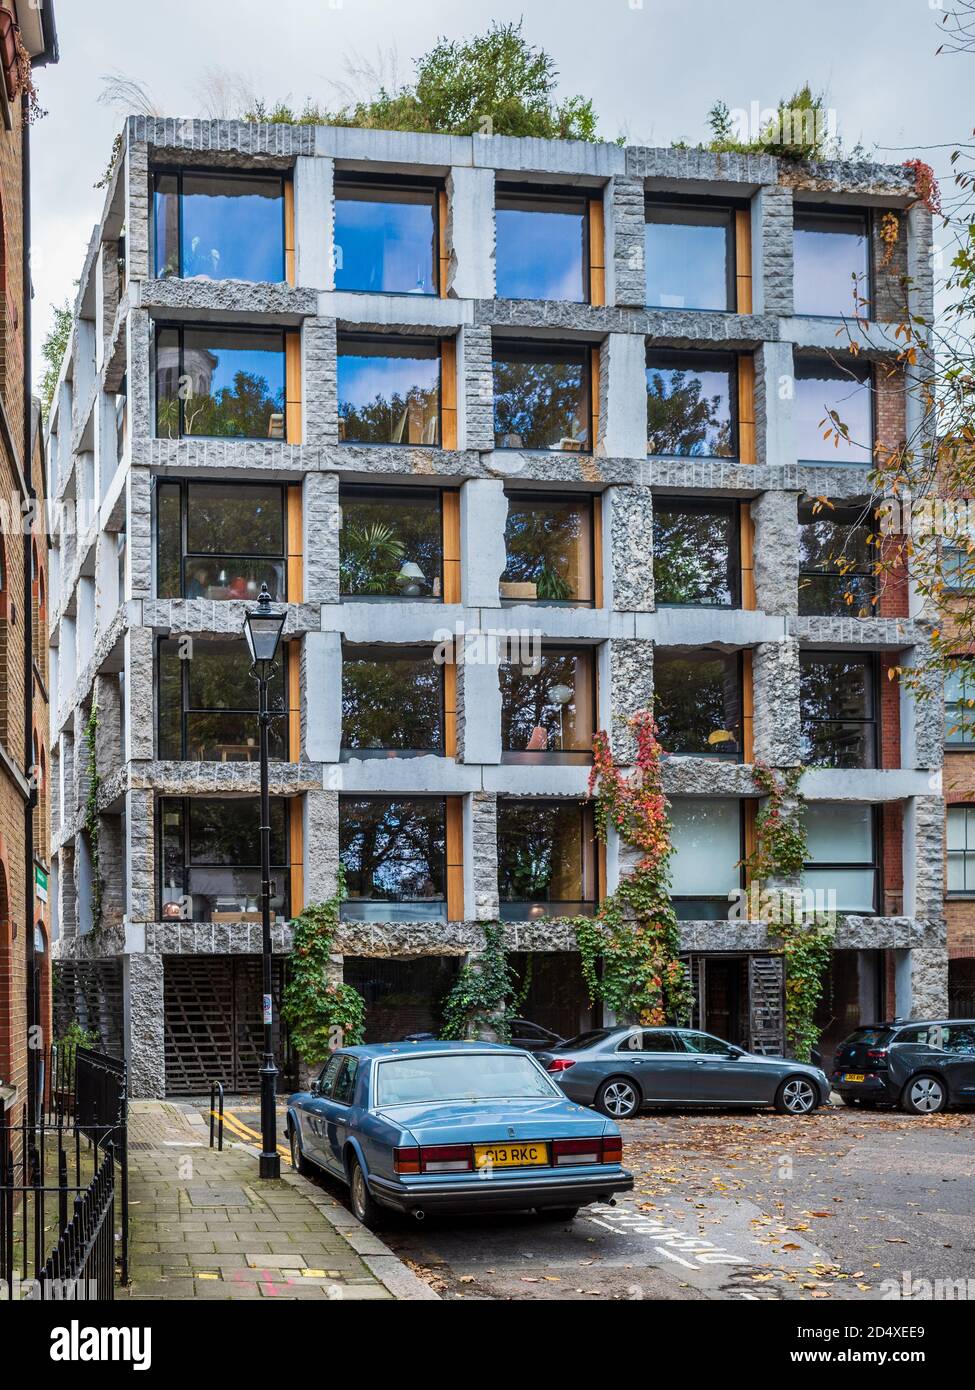 15 Clerkenwell Close London - un bâtiment controversé de six étages à usage mixte avec une façade en pierre. Architecte: Amin Taha 2017. Prix nationaux RIBA 2017. Banque D'Images